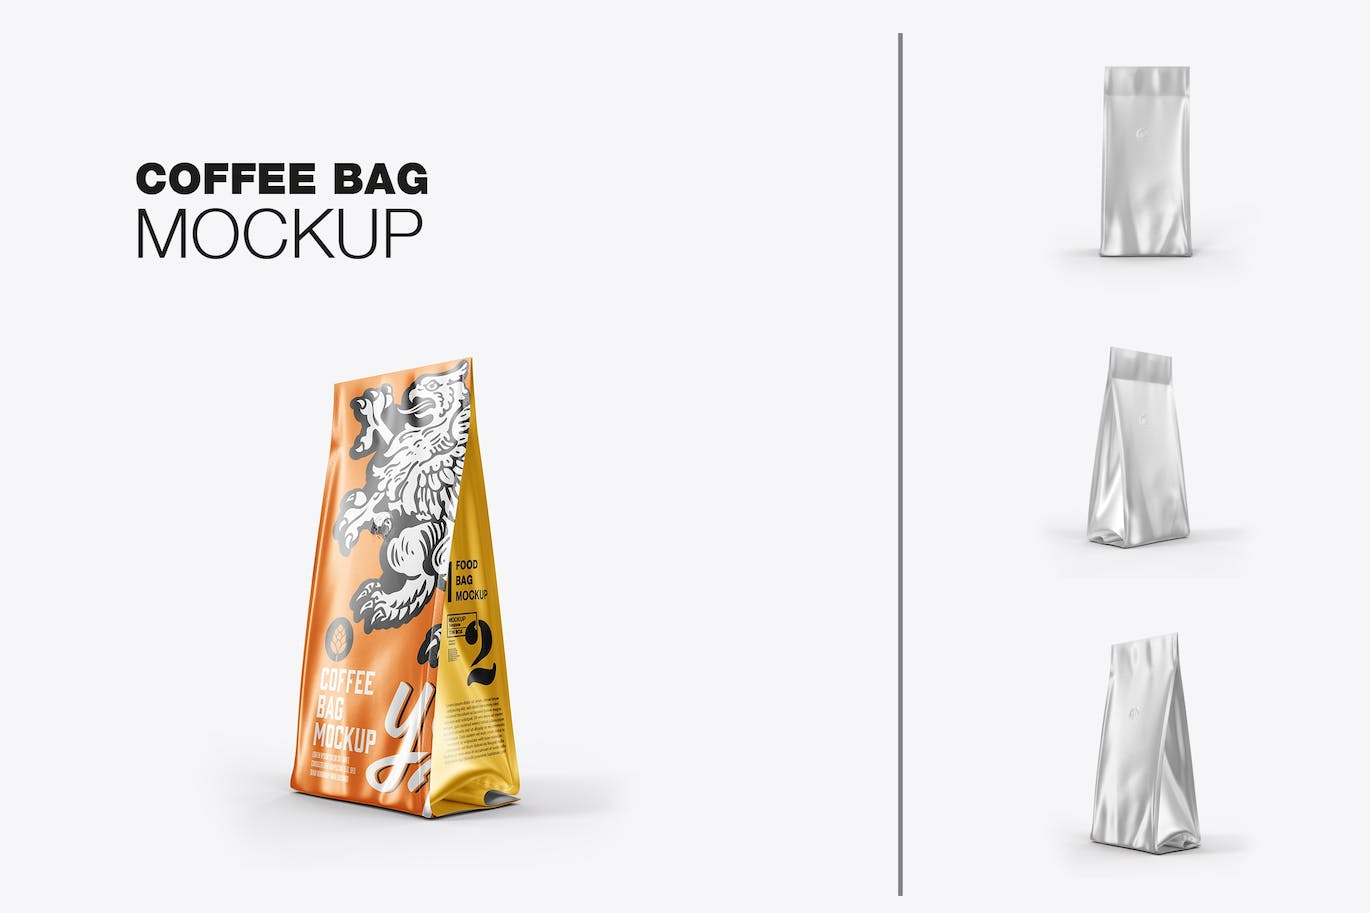 金属纸咖啡袋包装展示样机图 Set Metallic Paper Coffee Bag Mockup 样机素材 第1张